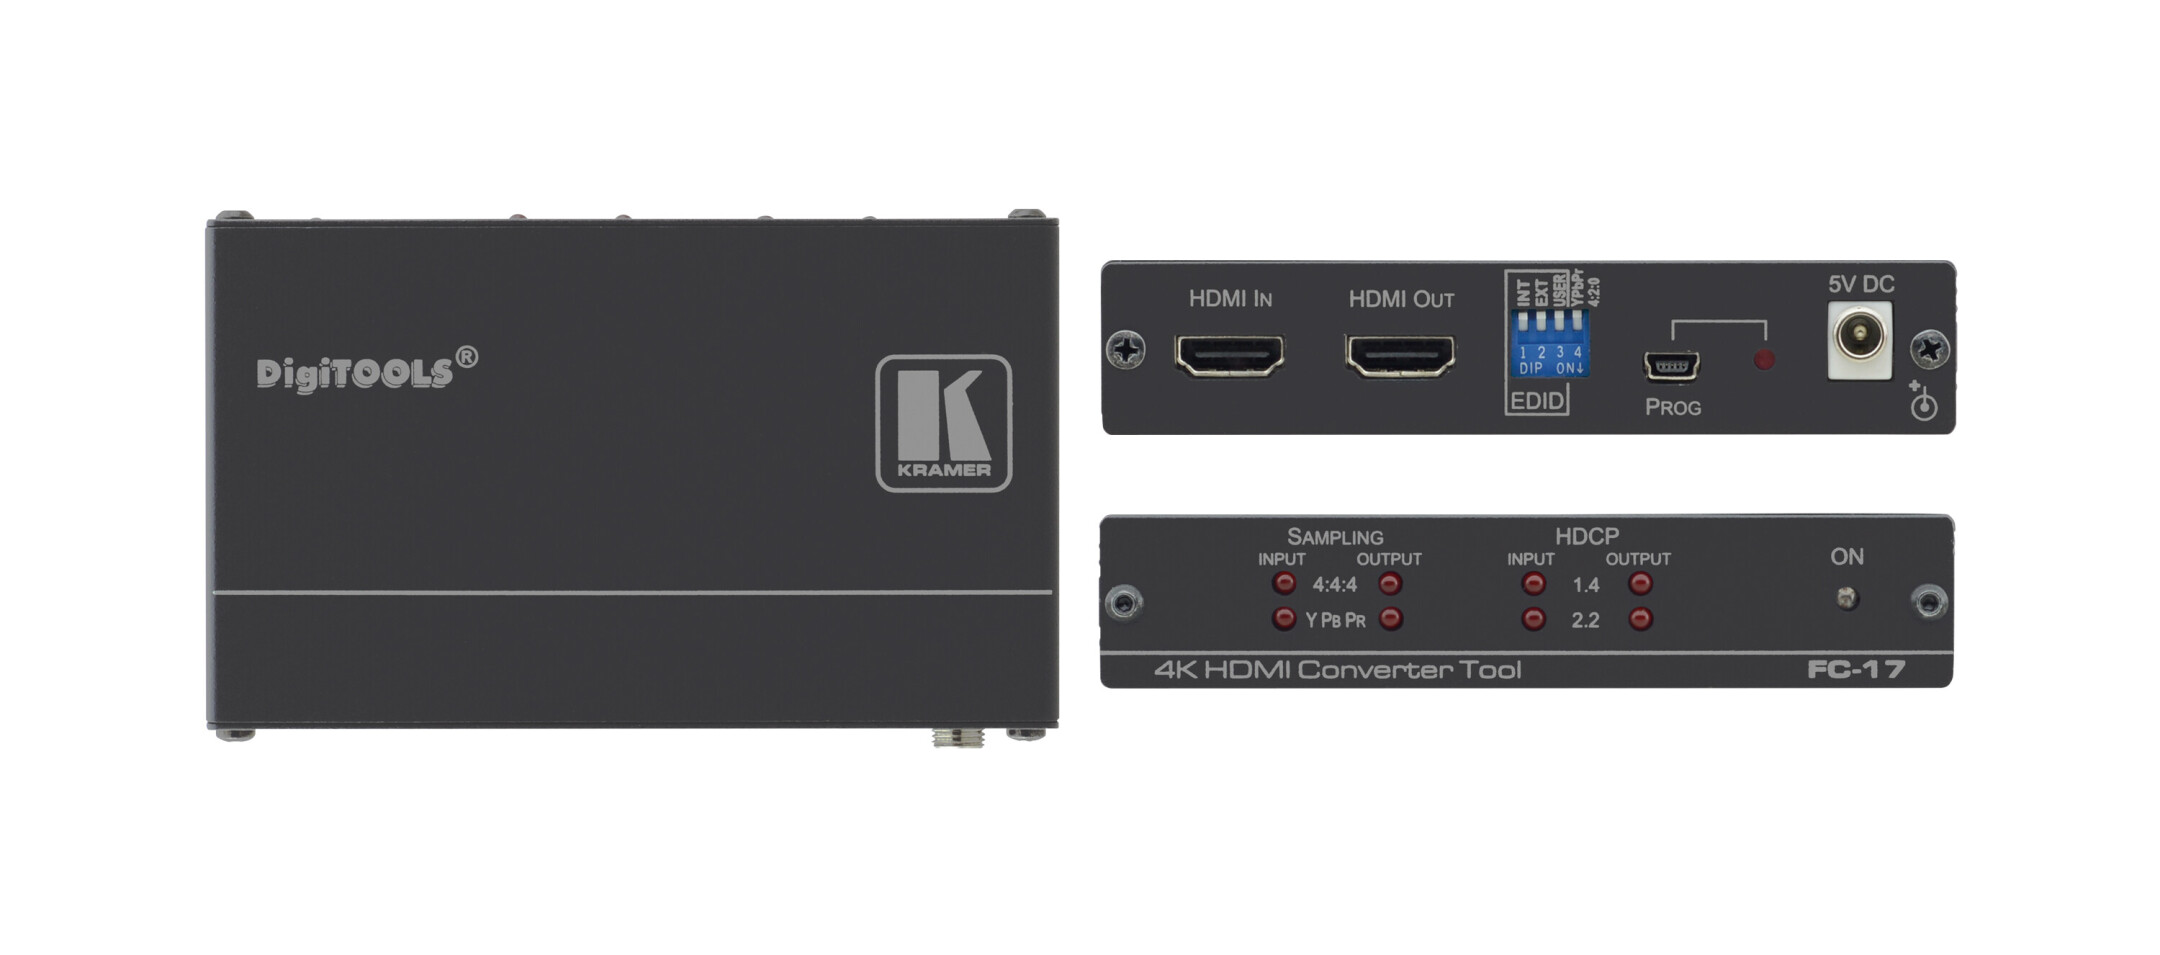 Kramer-FC-17-4K-HDMI-converter-tool